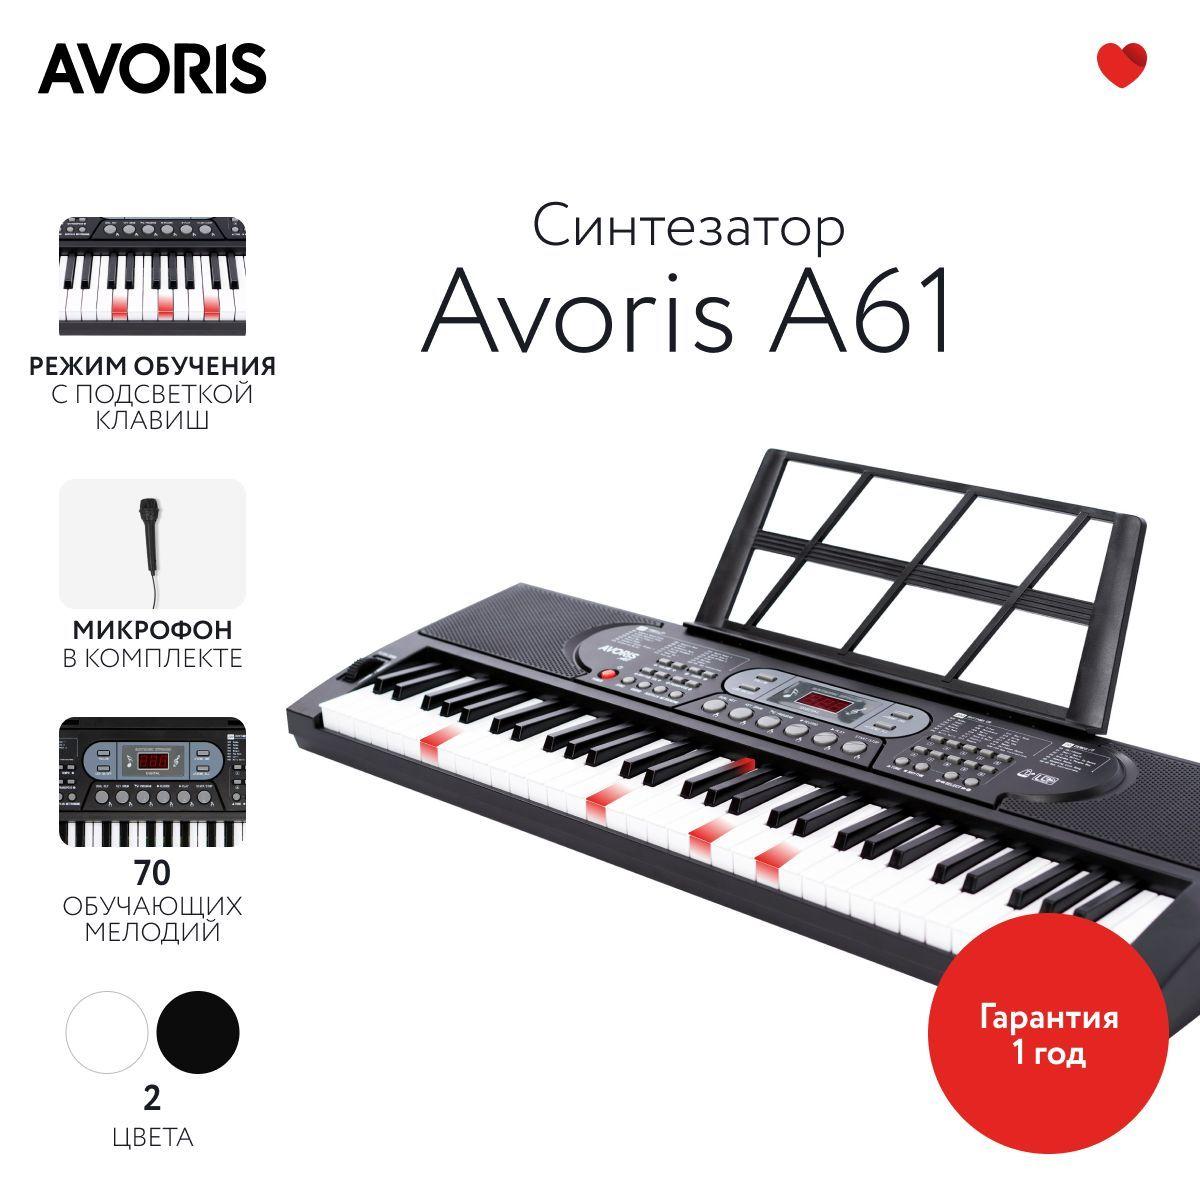 Avoris A61 - синтезатор с функцией обучения и подсветкой клавиш, черный цвет